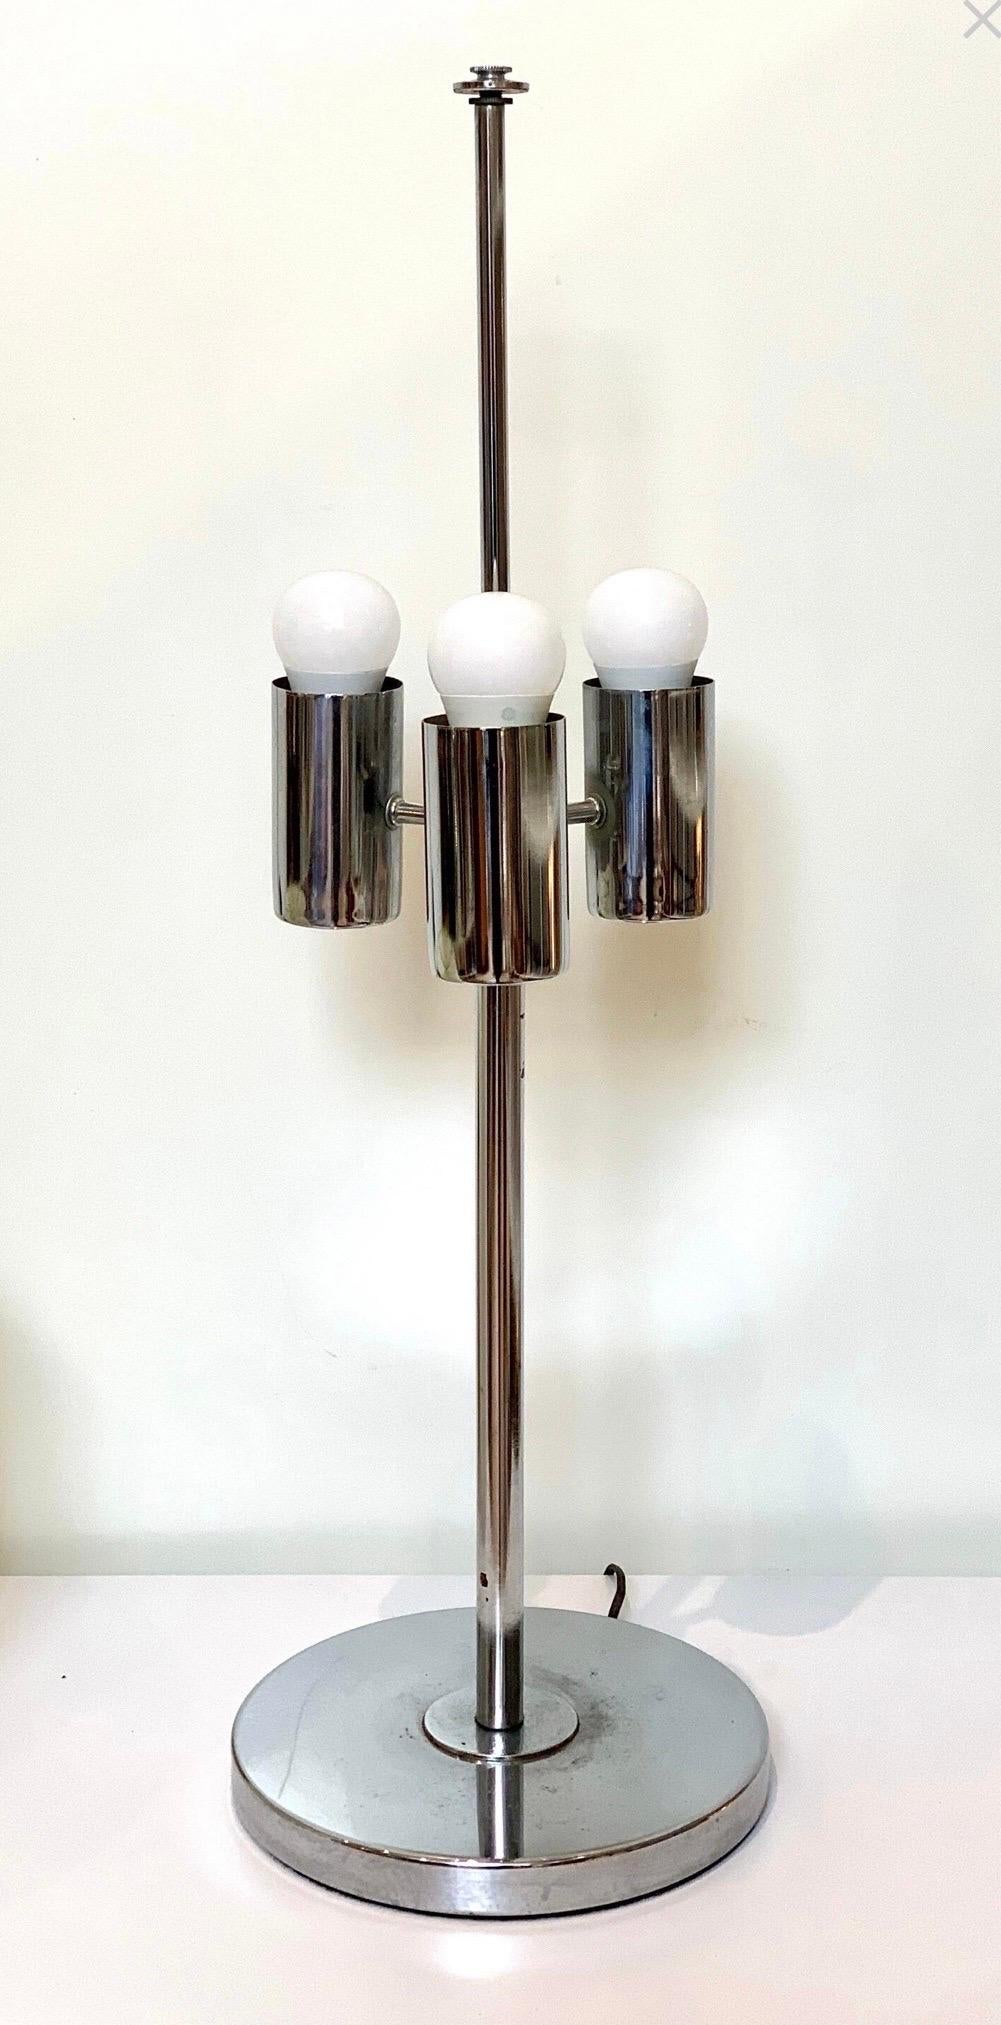 Moderne verchromte Tischleuchte von Robert Sonneman aus der Jahrhundertmitte mit drei Leuchten und Originalschirm. In ausgezeichnetem Zustand, mit alters- und gebrauchstypischen Gebrauchsspuren.

Lampe misst 10